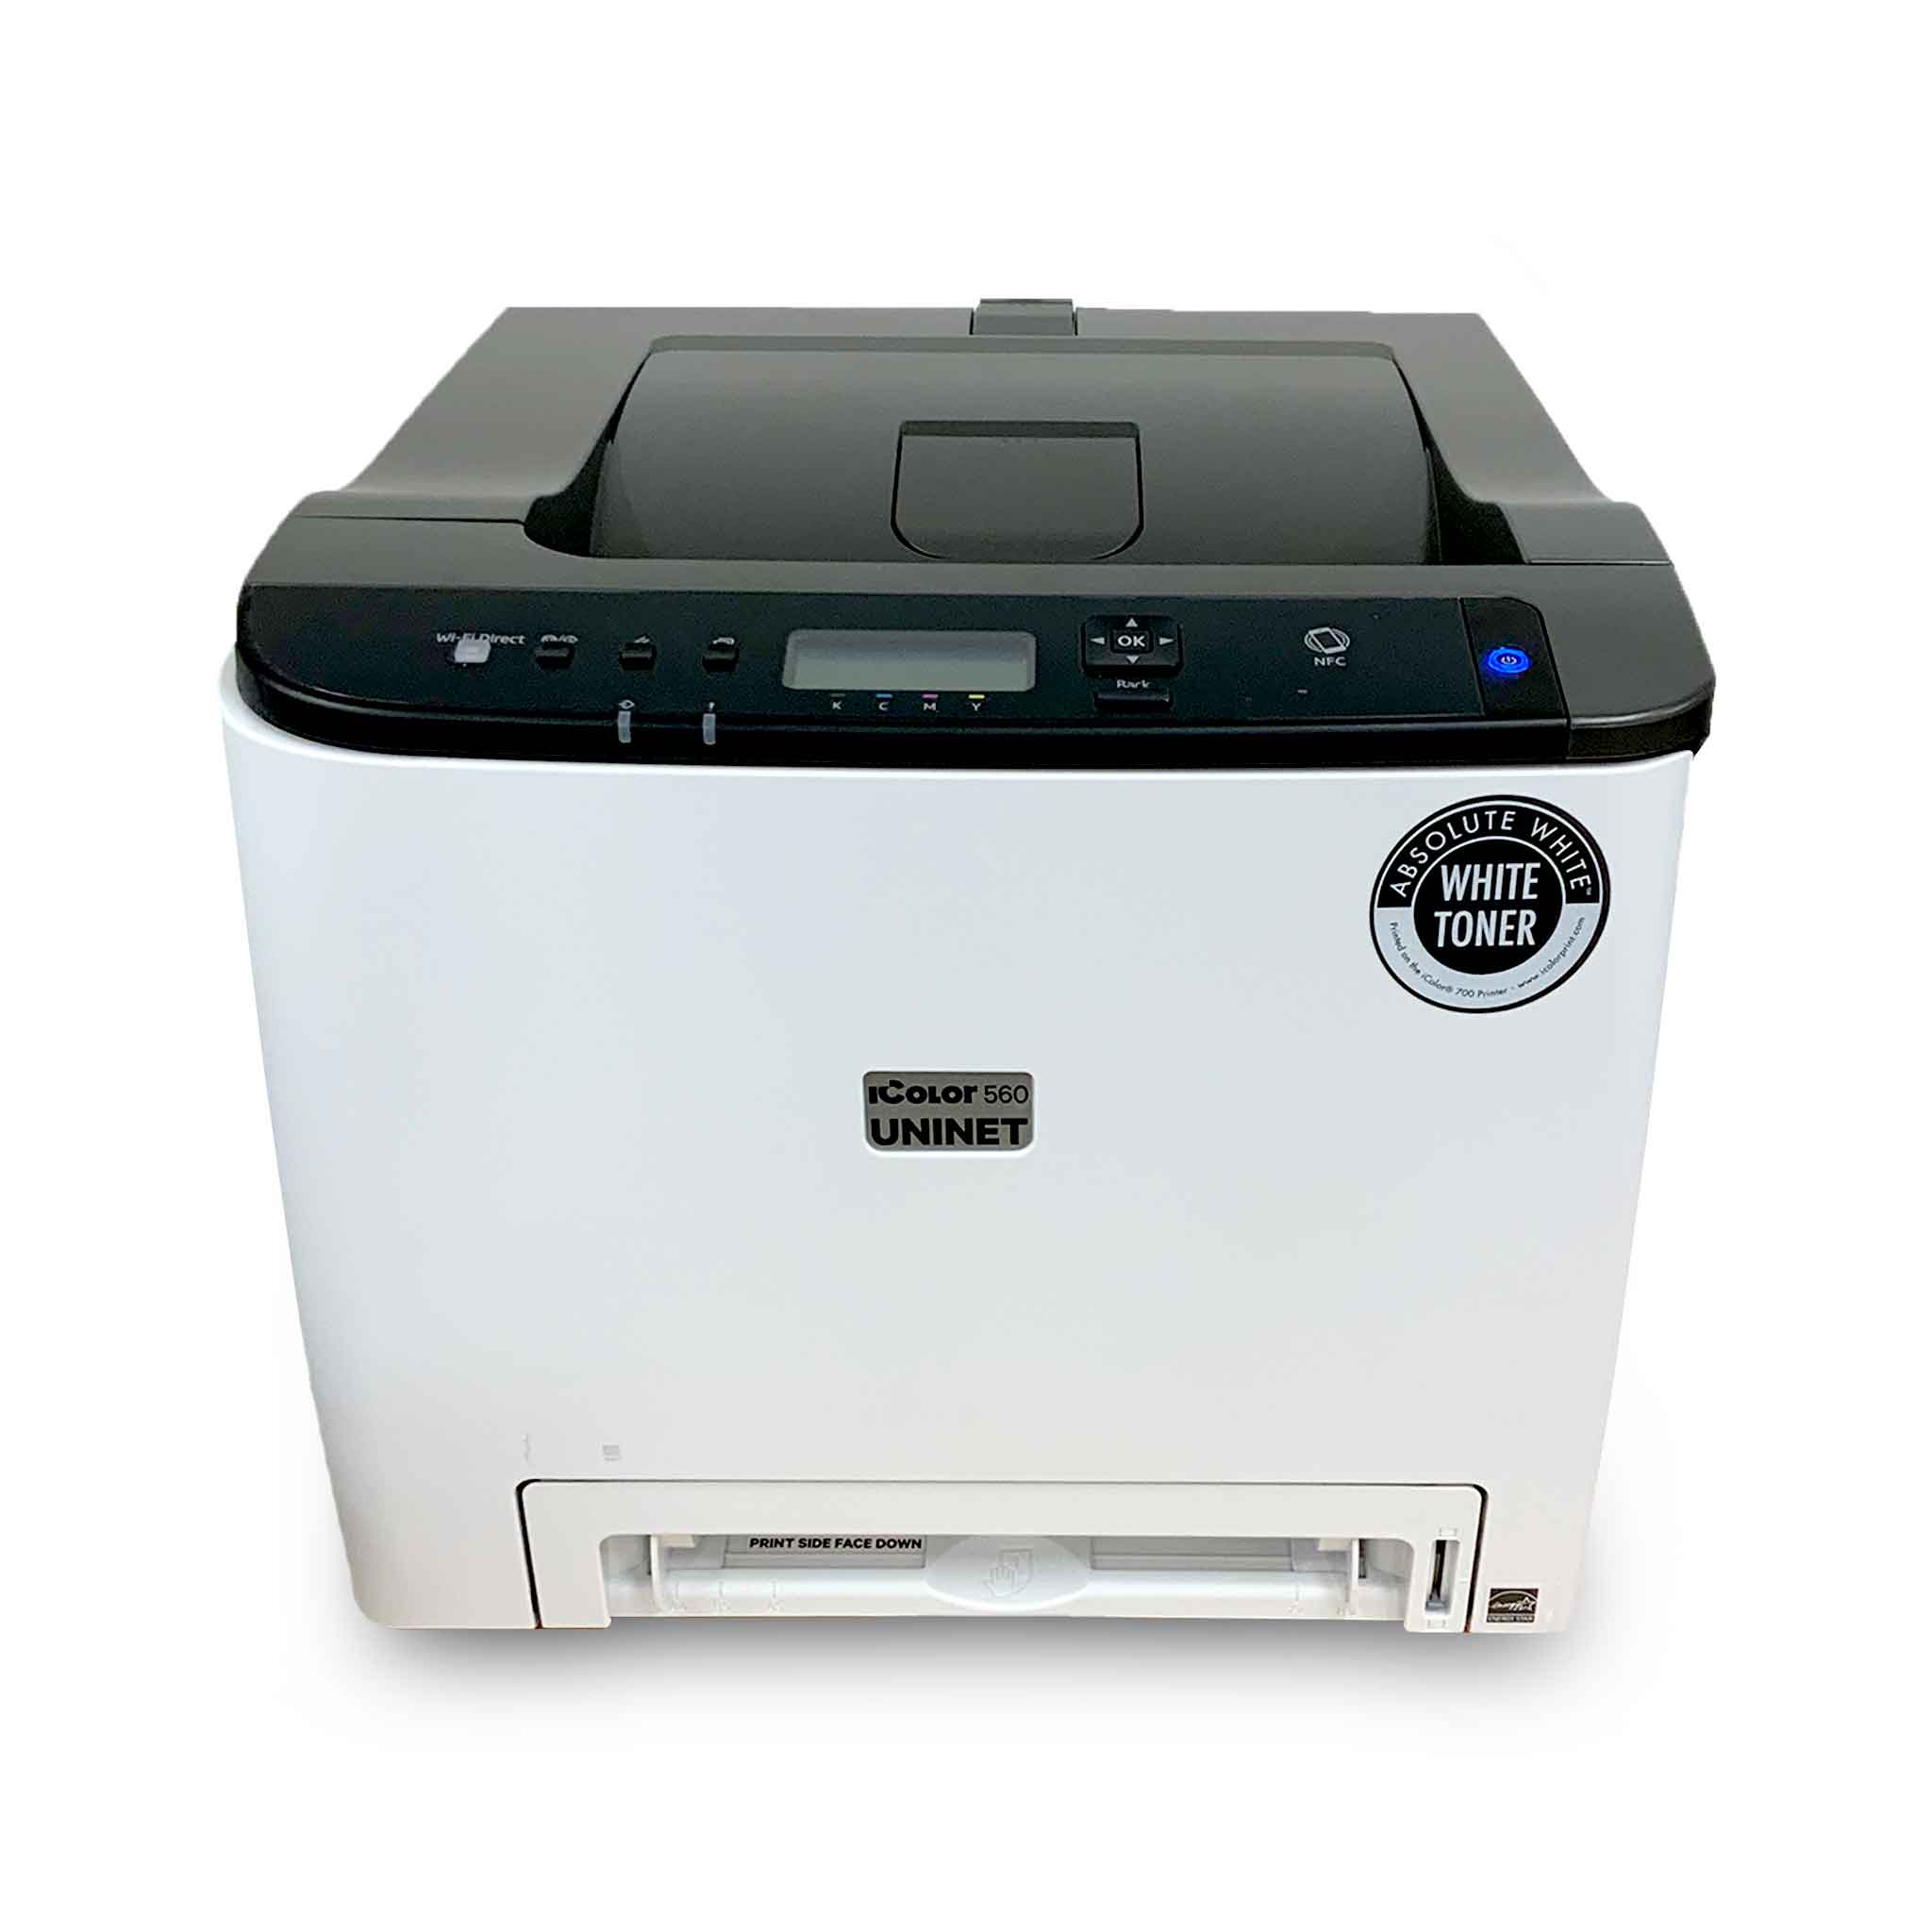 Uninet iColor® 560 White Toner Transfer Printer